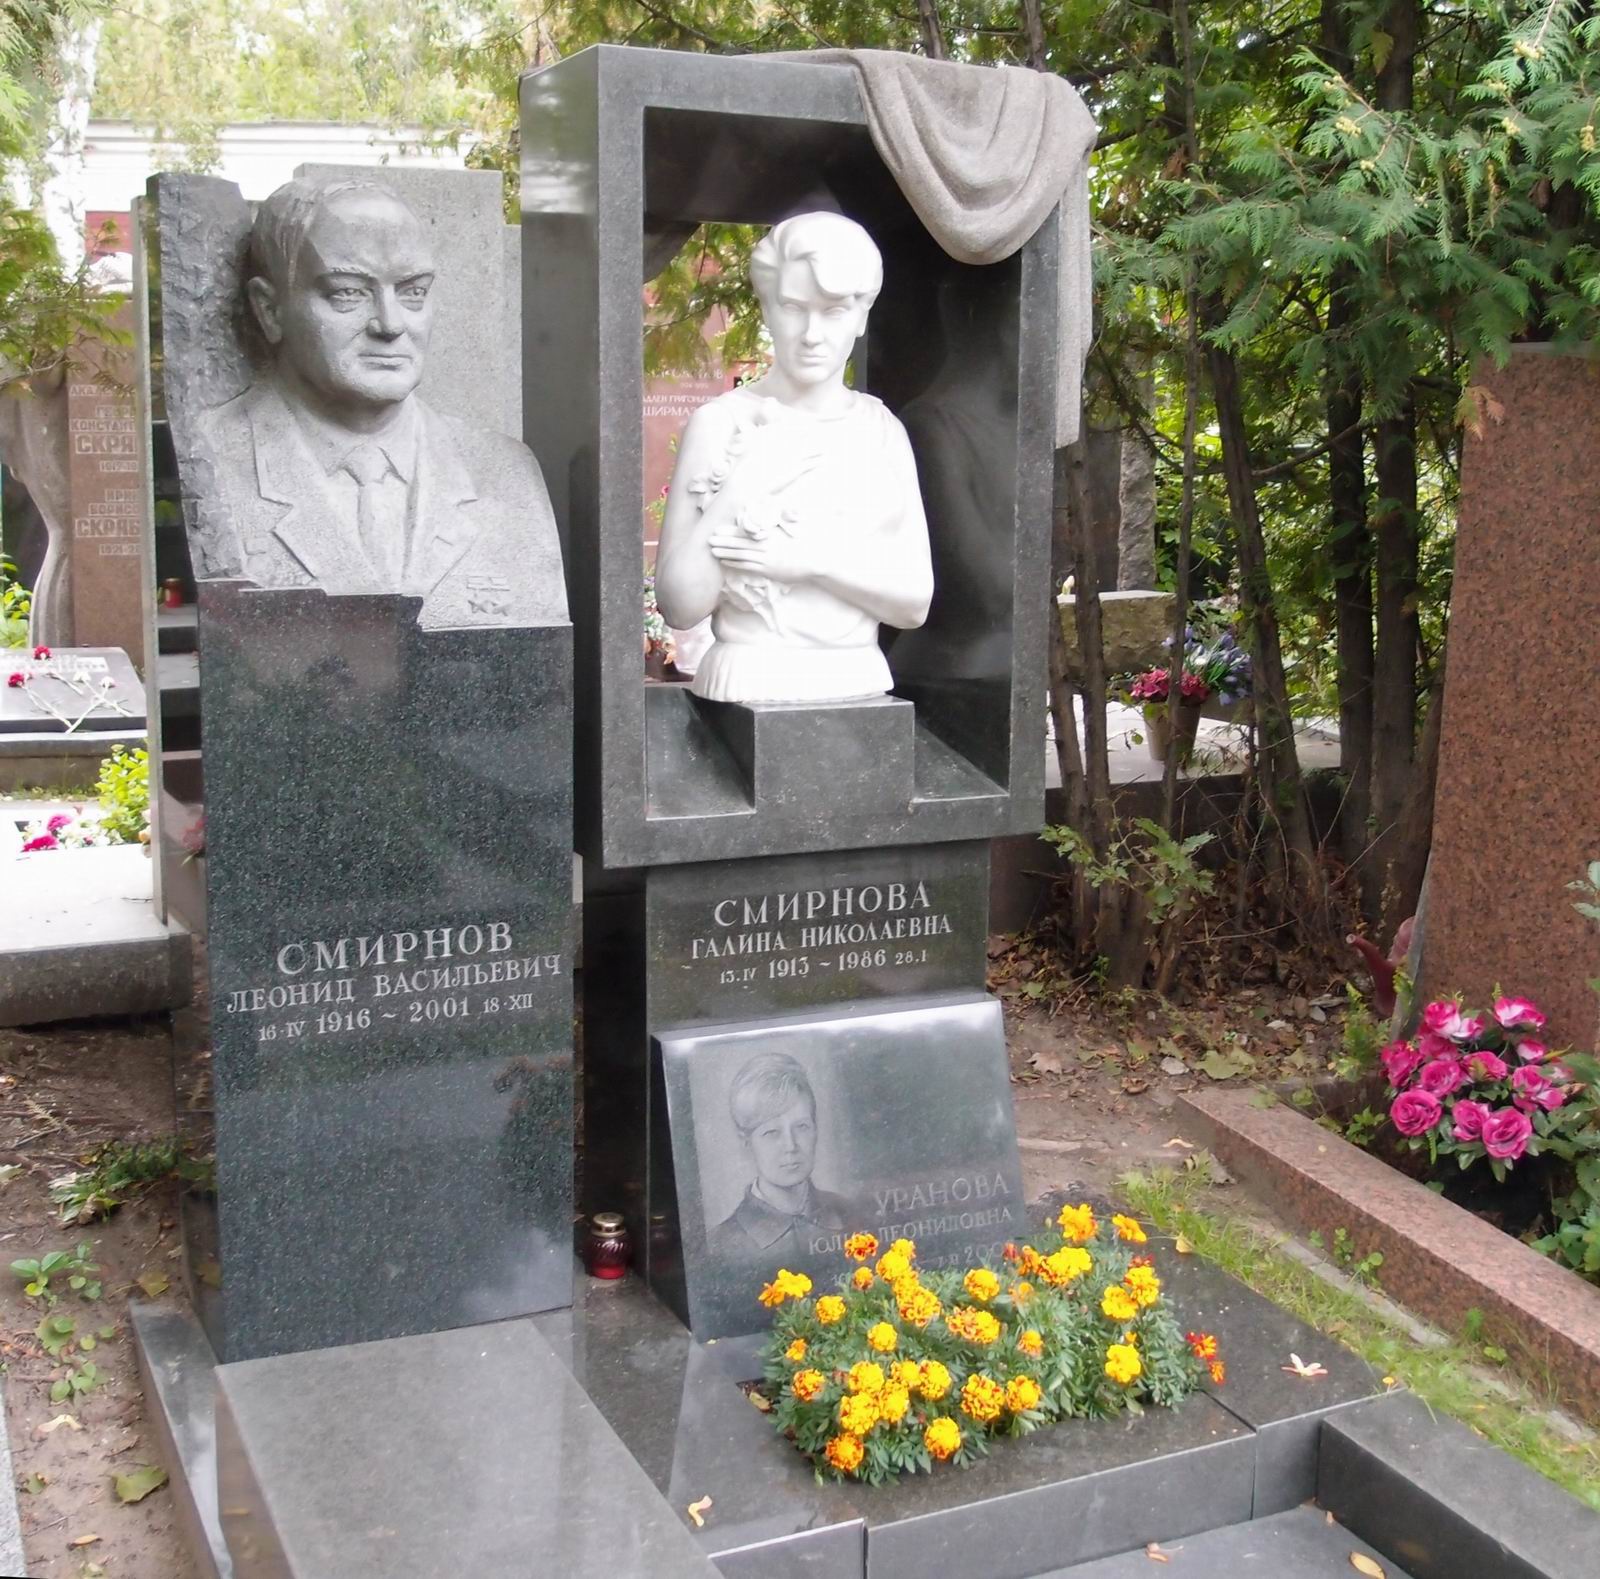 Памятник на могиле Смирнова Л.В. (1916–2001), на Новодевичьем кладбище (10–3–11). Нажмите левую кнопку мыши чтобы увидеть фрагмент памятника.